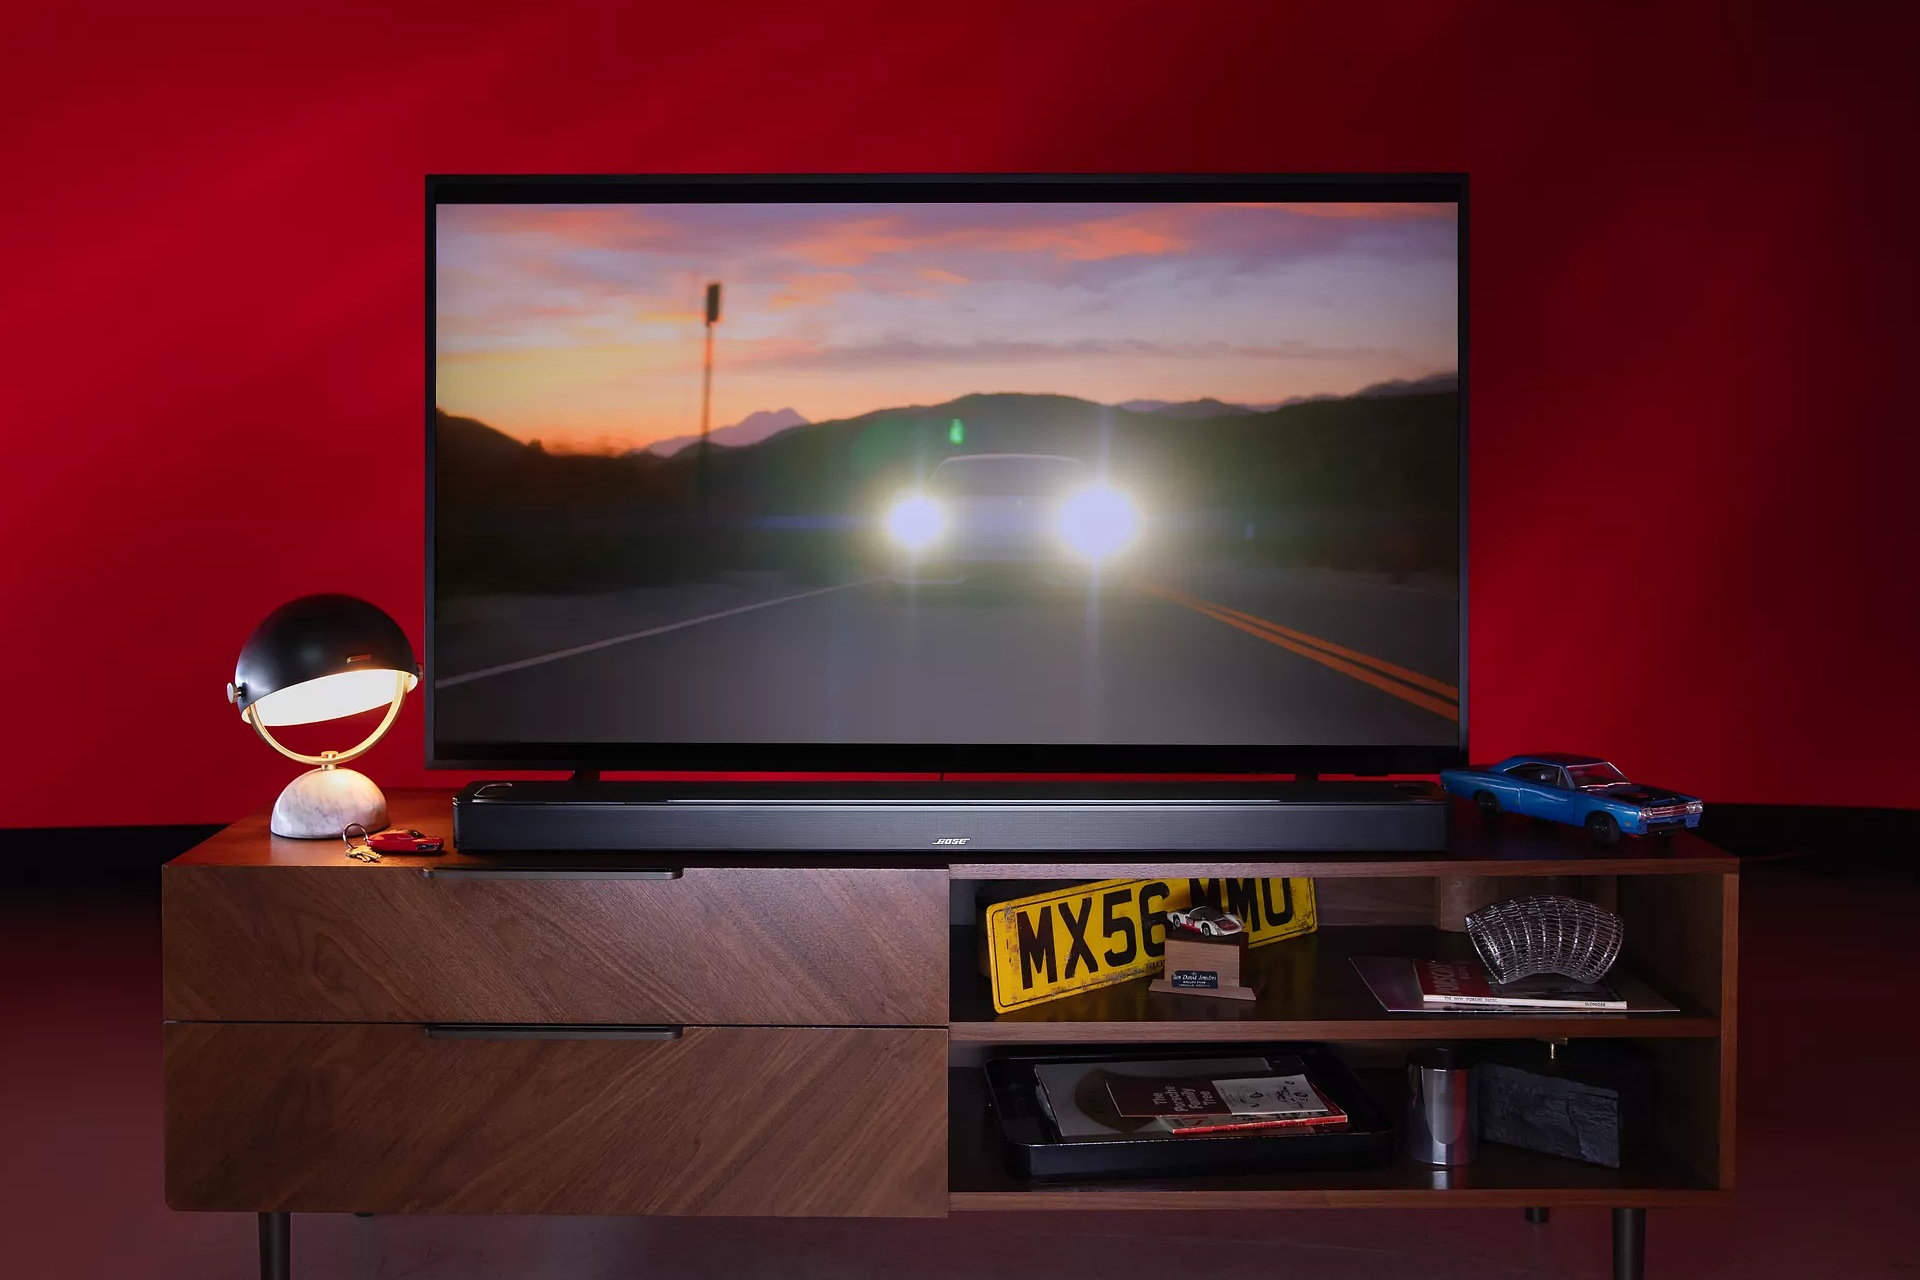 Barre de son intelligente Bose Ultra sur un meuble télé pendant qu’un film avec une voiture est diffusé à la télévision